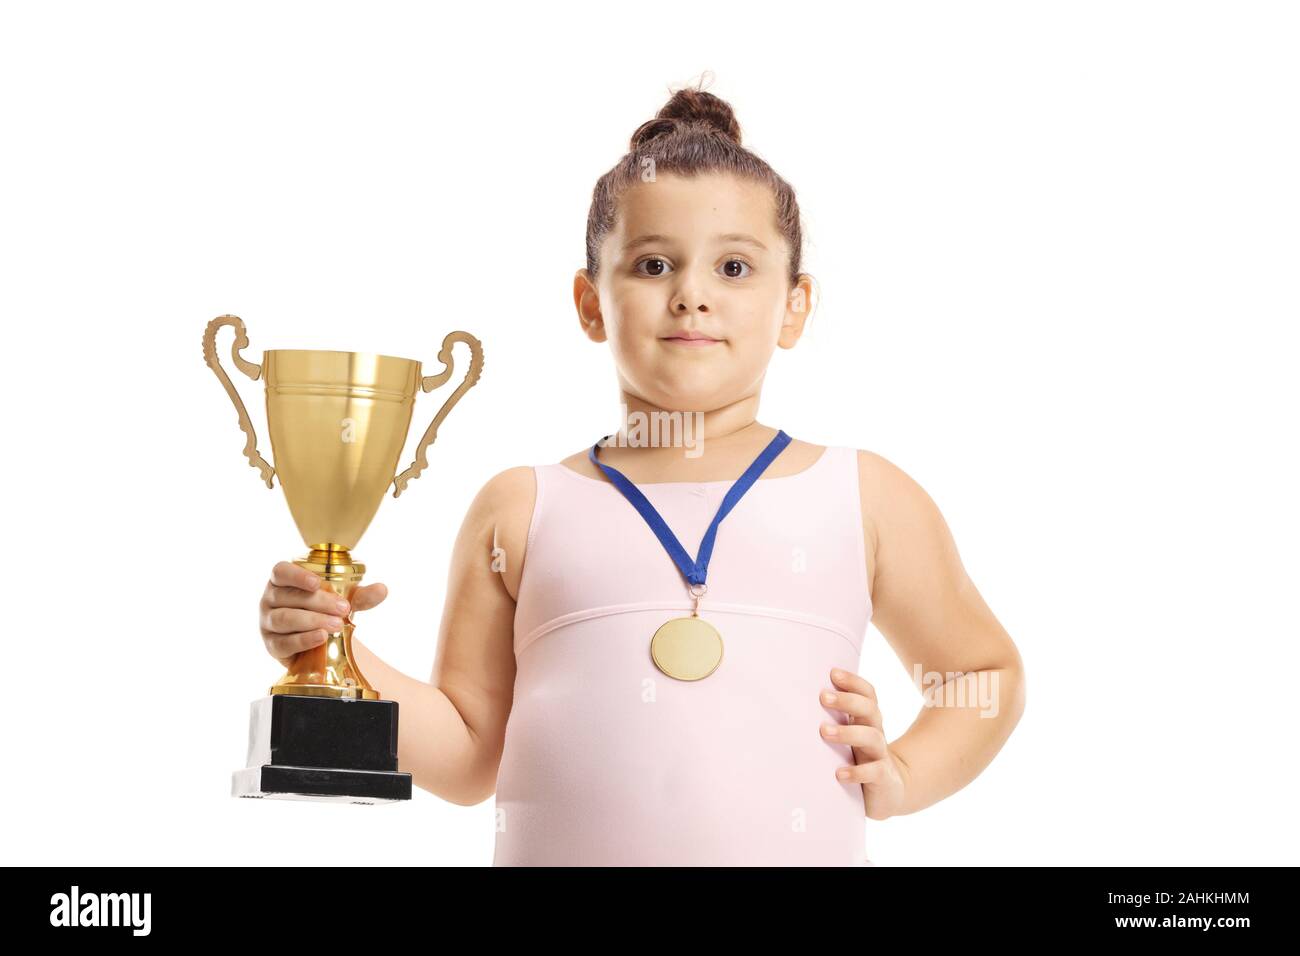 Peu de gymnastique girl holding a cup trophée d'or et une médaille isolé sur fond blanc Banque D'Images